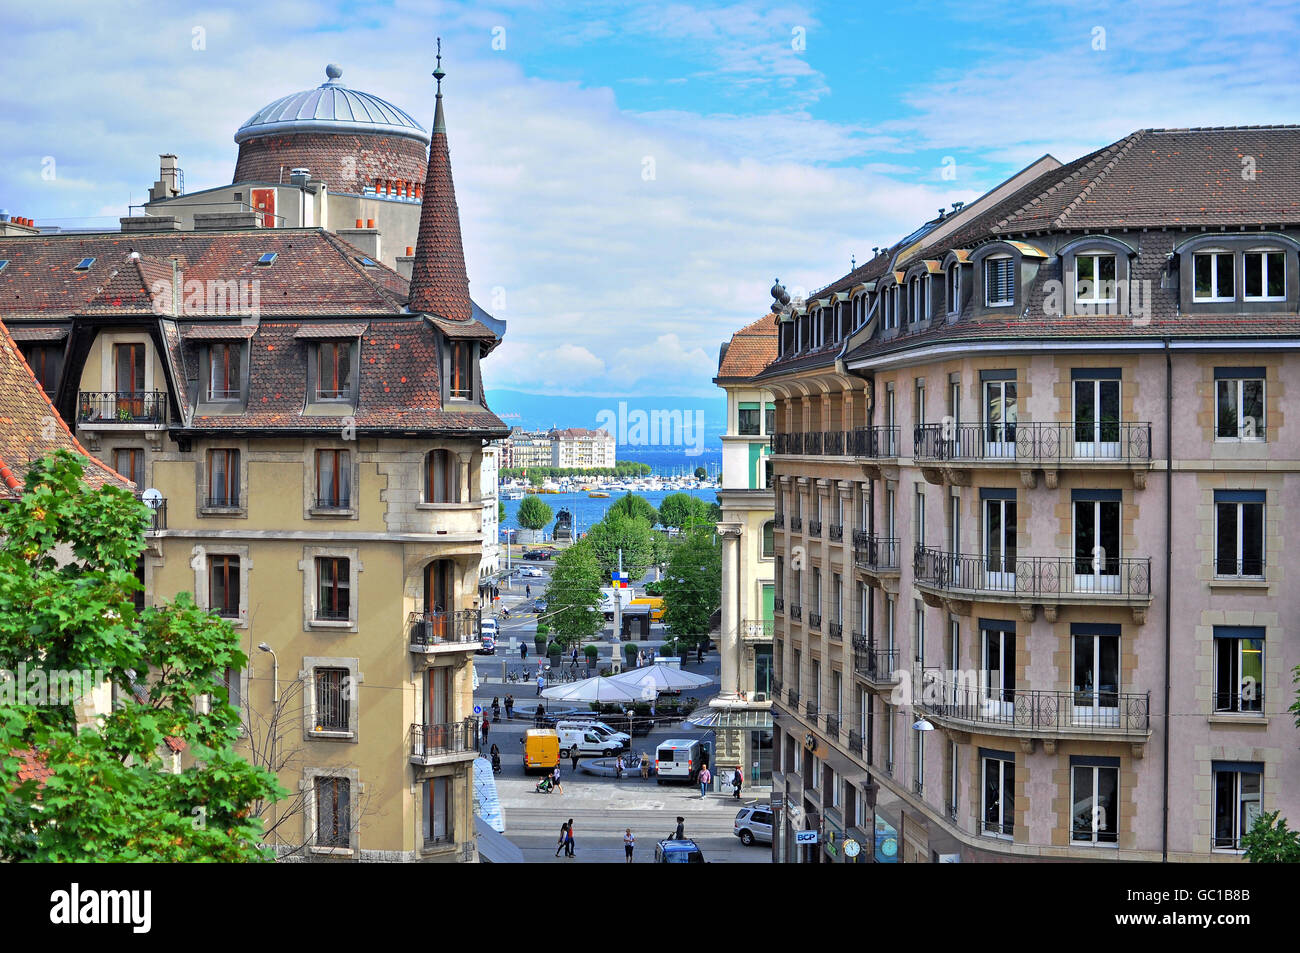 Ginevra, Svizzera - 17 agosto: vista dell'edificio nel centro della città di Ginevra il 17 agosto 2015. Ginevra è la seconda città più grande Foto Stock